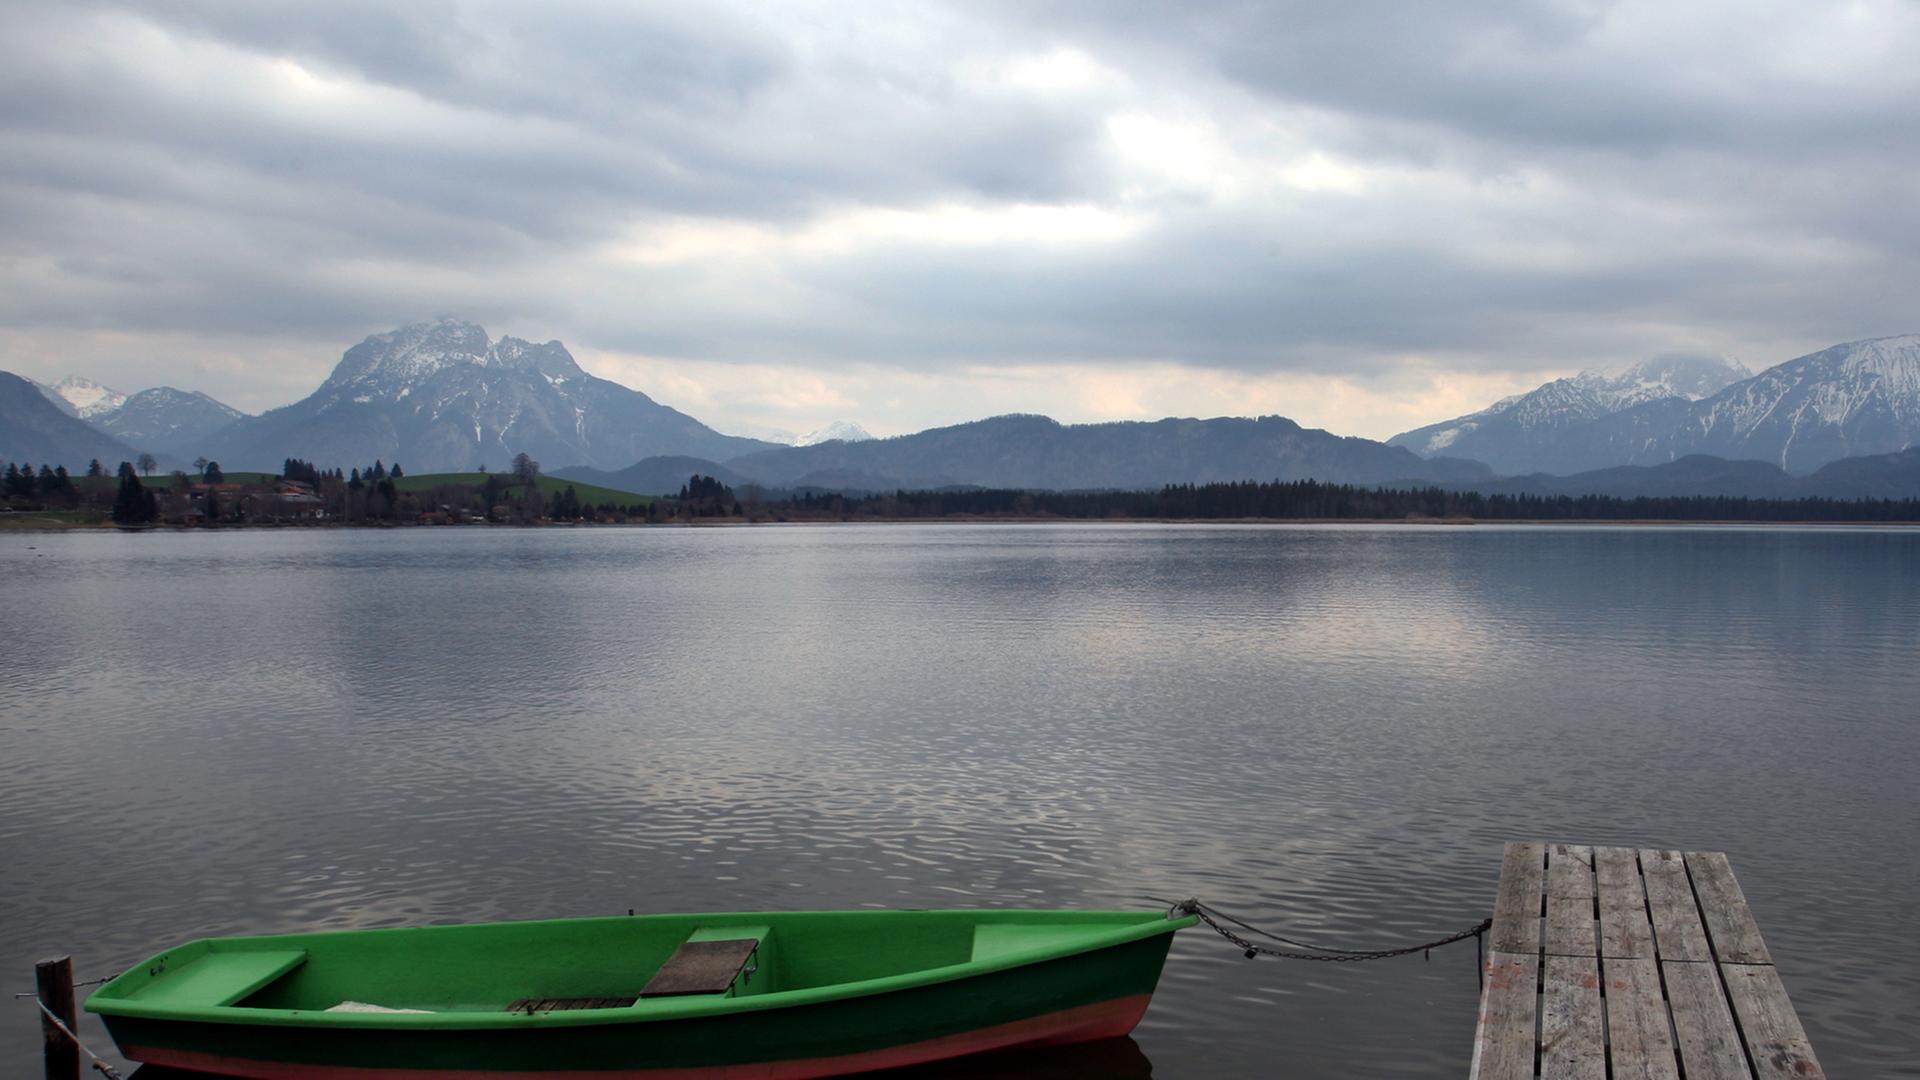 Wolkenverhangen ist es über einem See auf dem ein Holzboot an einem Steg liegt.